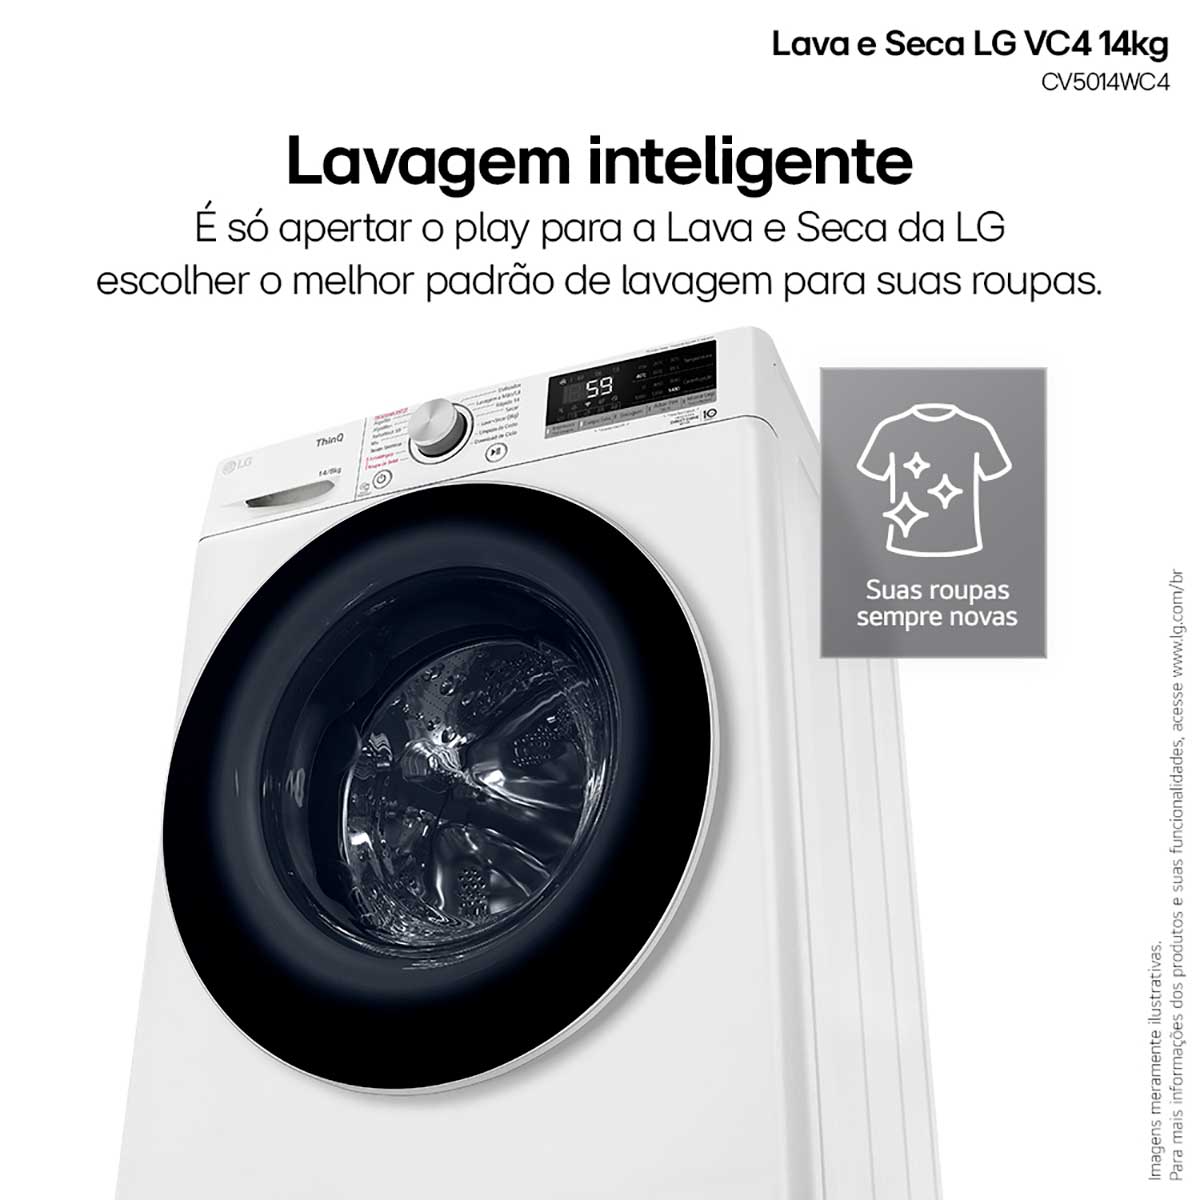 lava-e-seca-lg-smart-vc4-14kg-branca-com-inteligencia-artificial-aidd-cv5014wc4a-220v-4.jpg